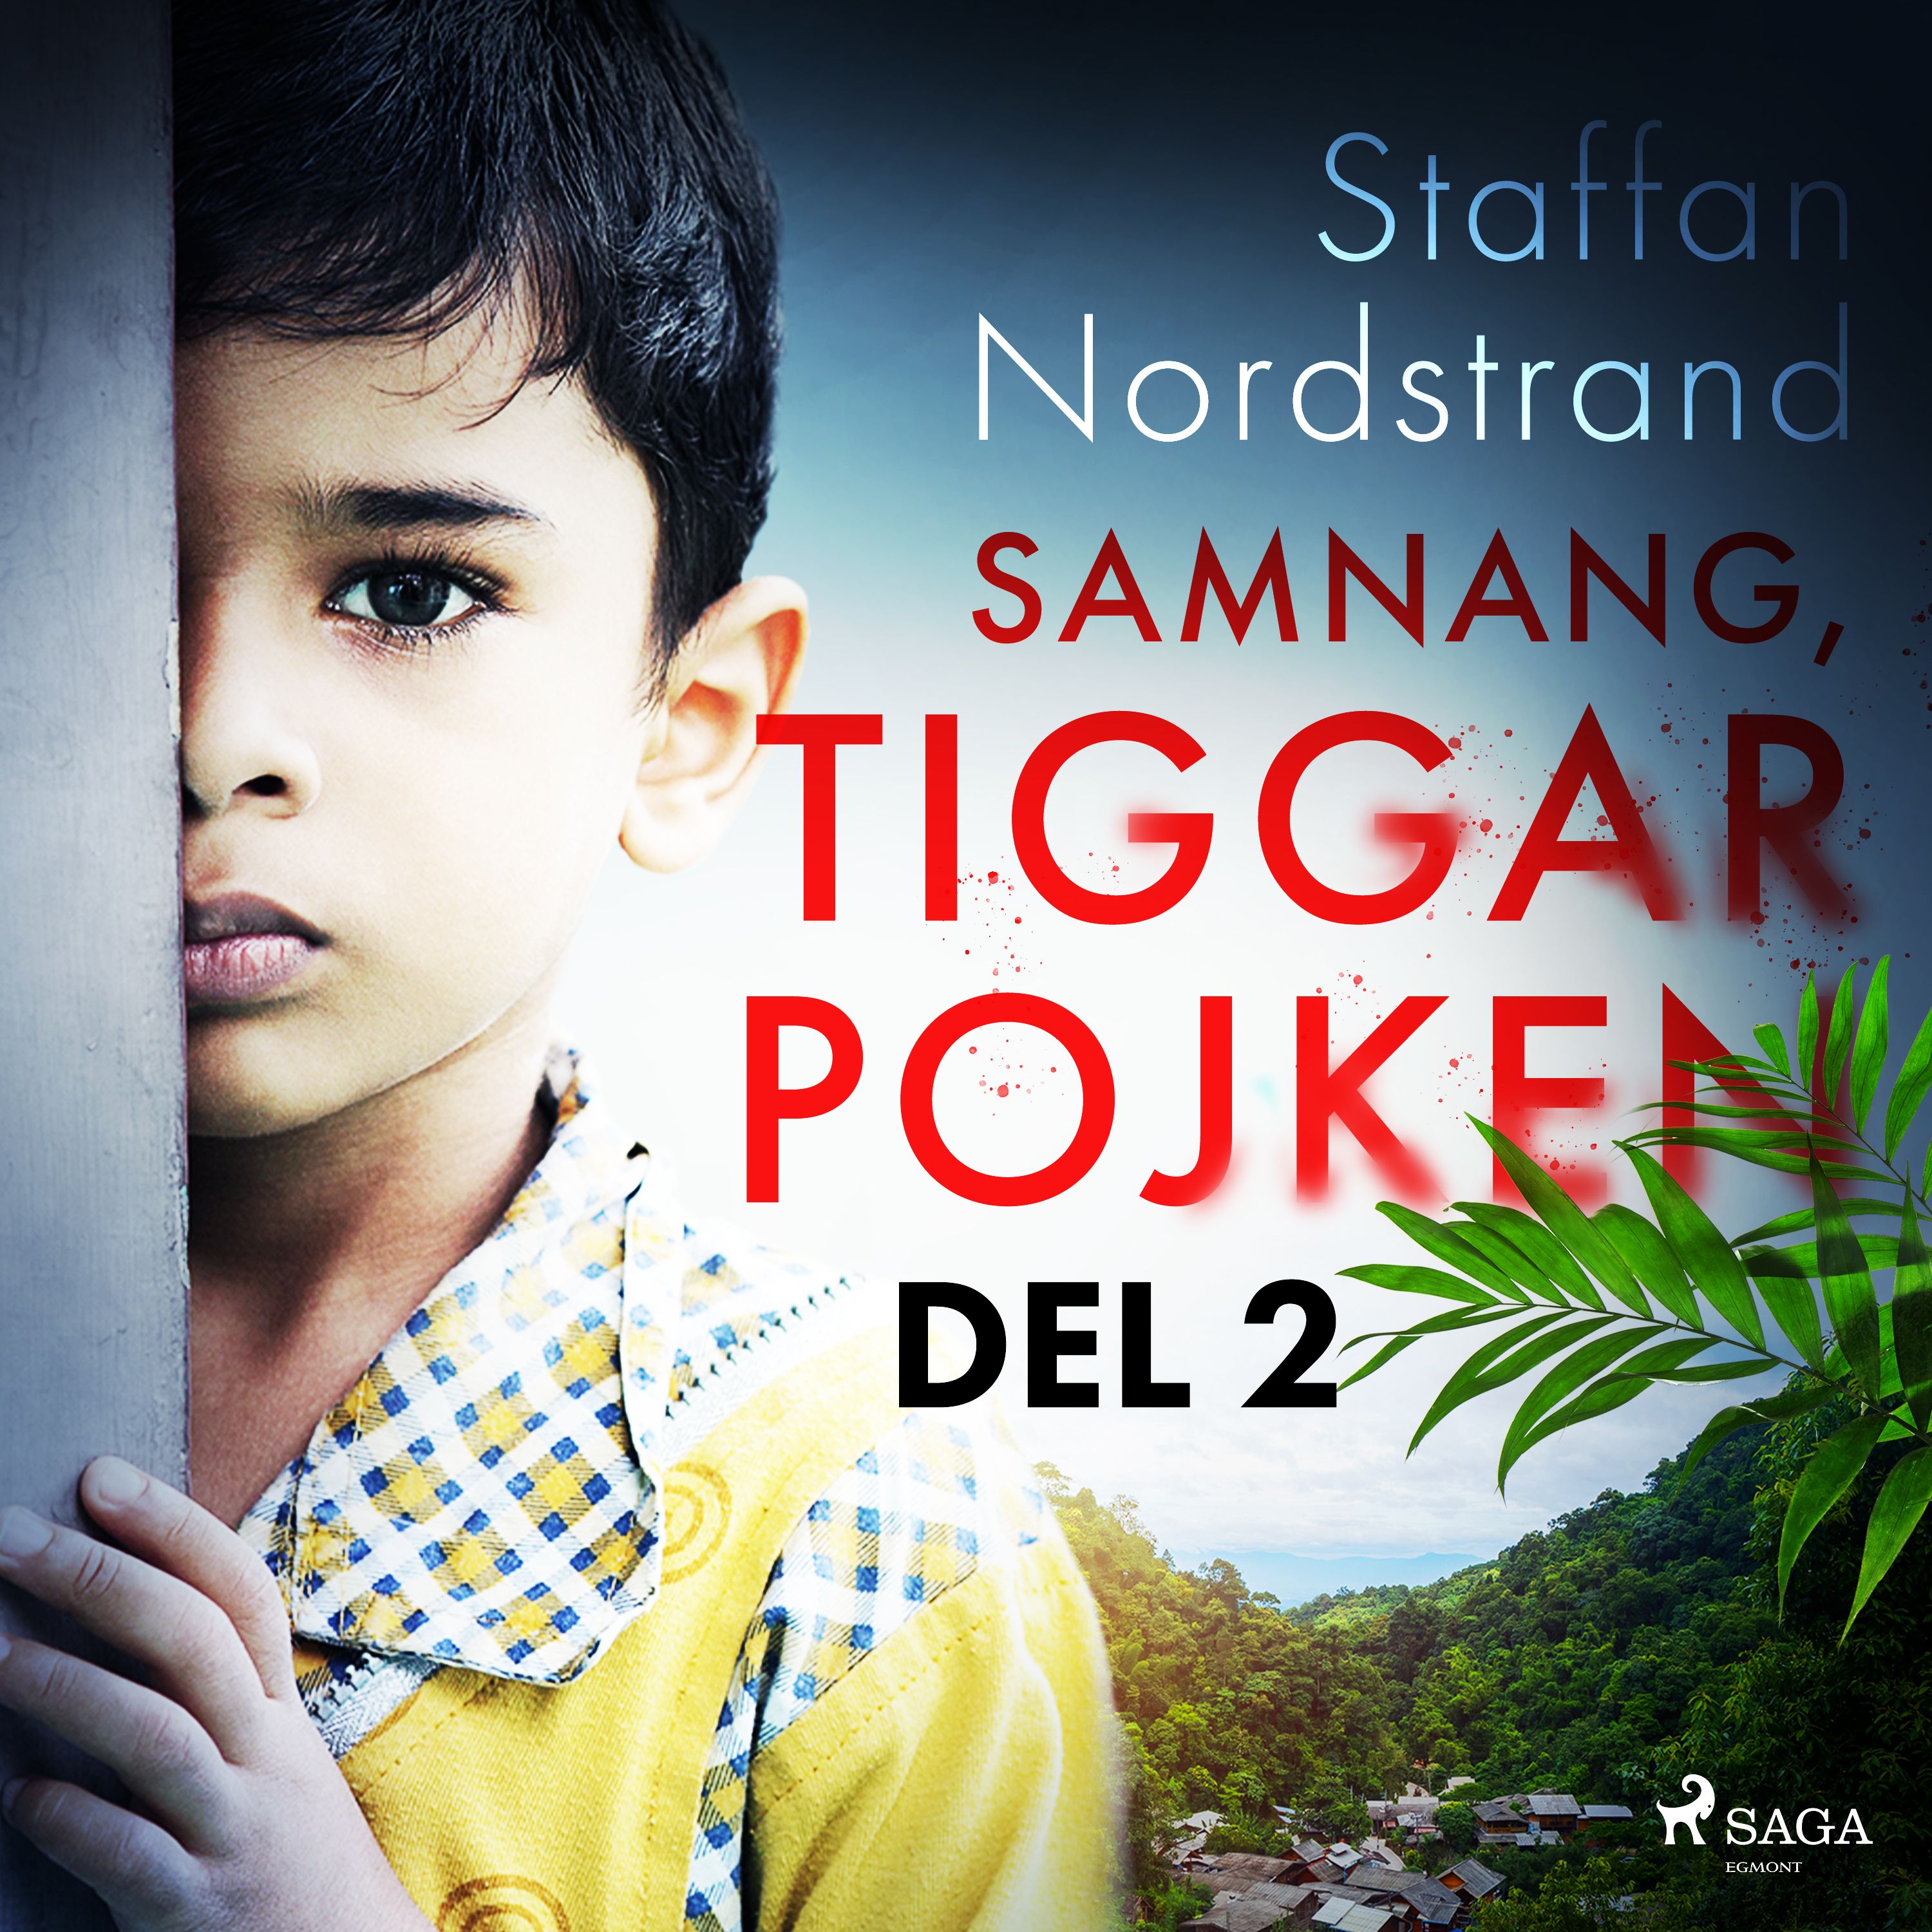 Samnang, tiggarpojken - del 2, audiobook by Staffan Nordstrand